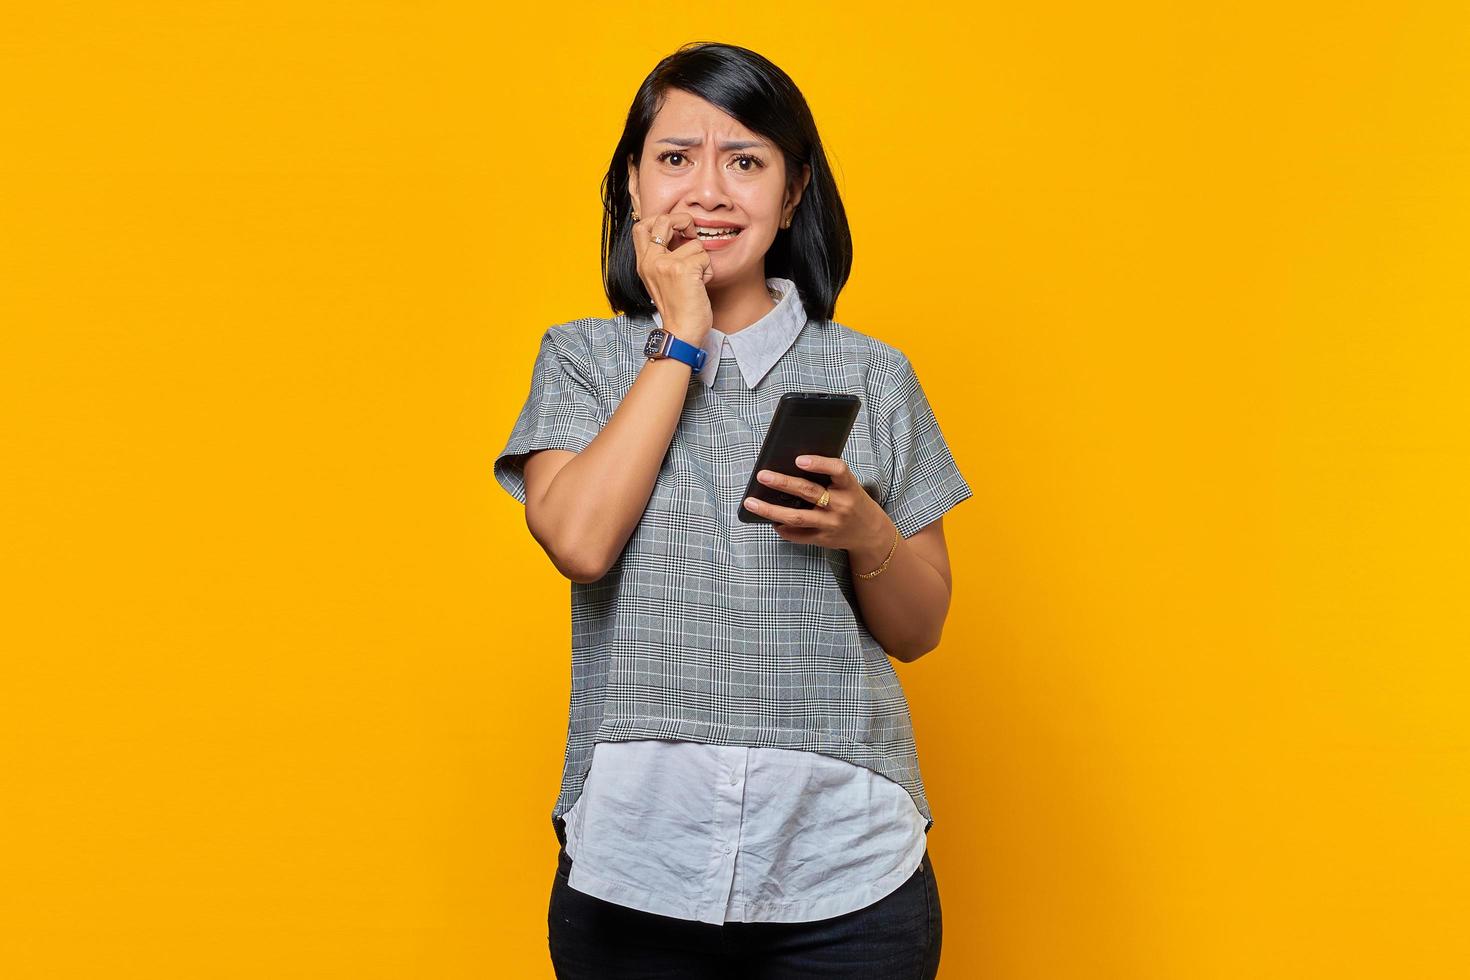 ung asiatisk kvinna som håller smartphone ser orolig och orolig ut rädd för något isolerat över gul bakgrund foto